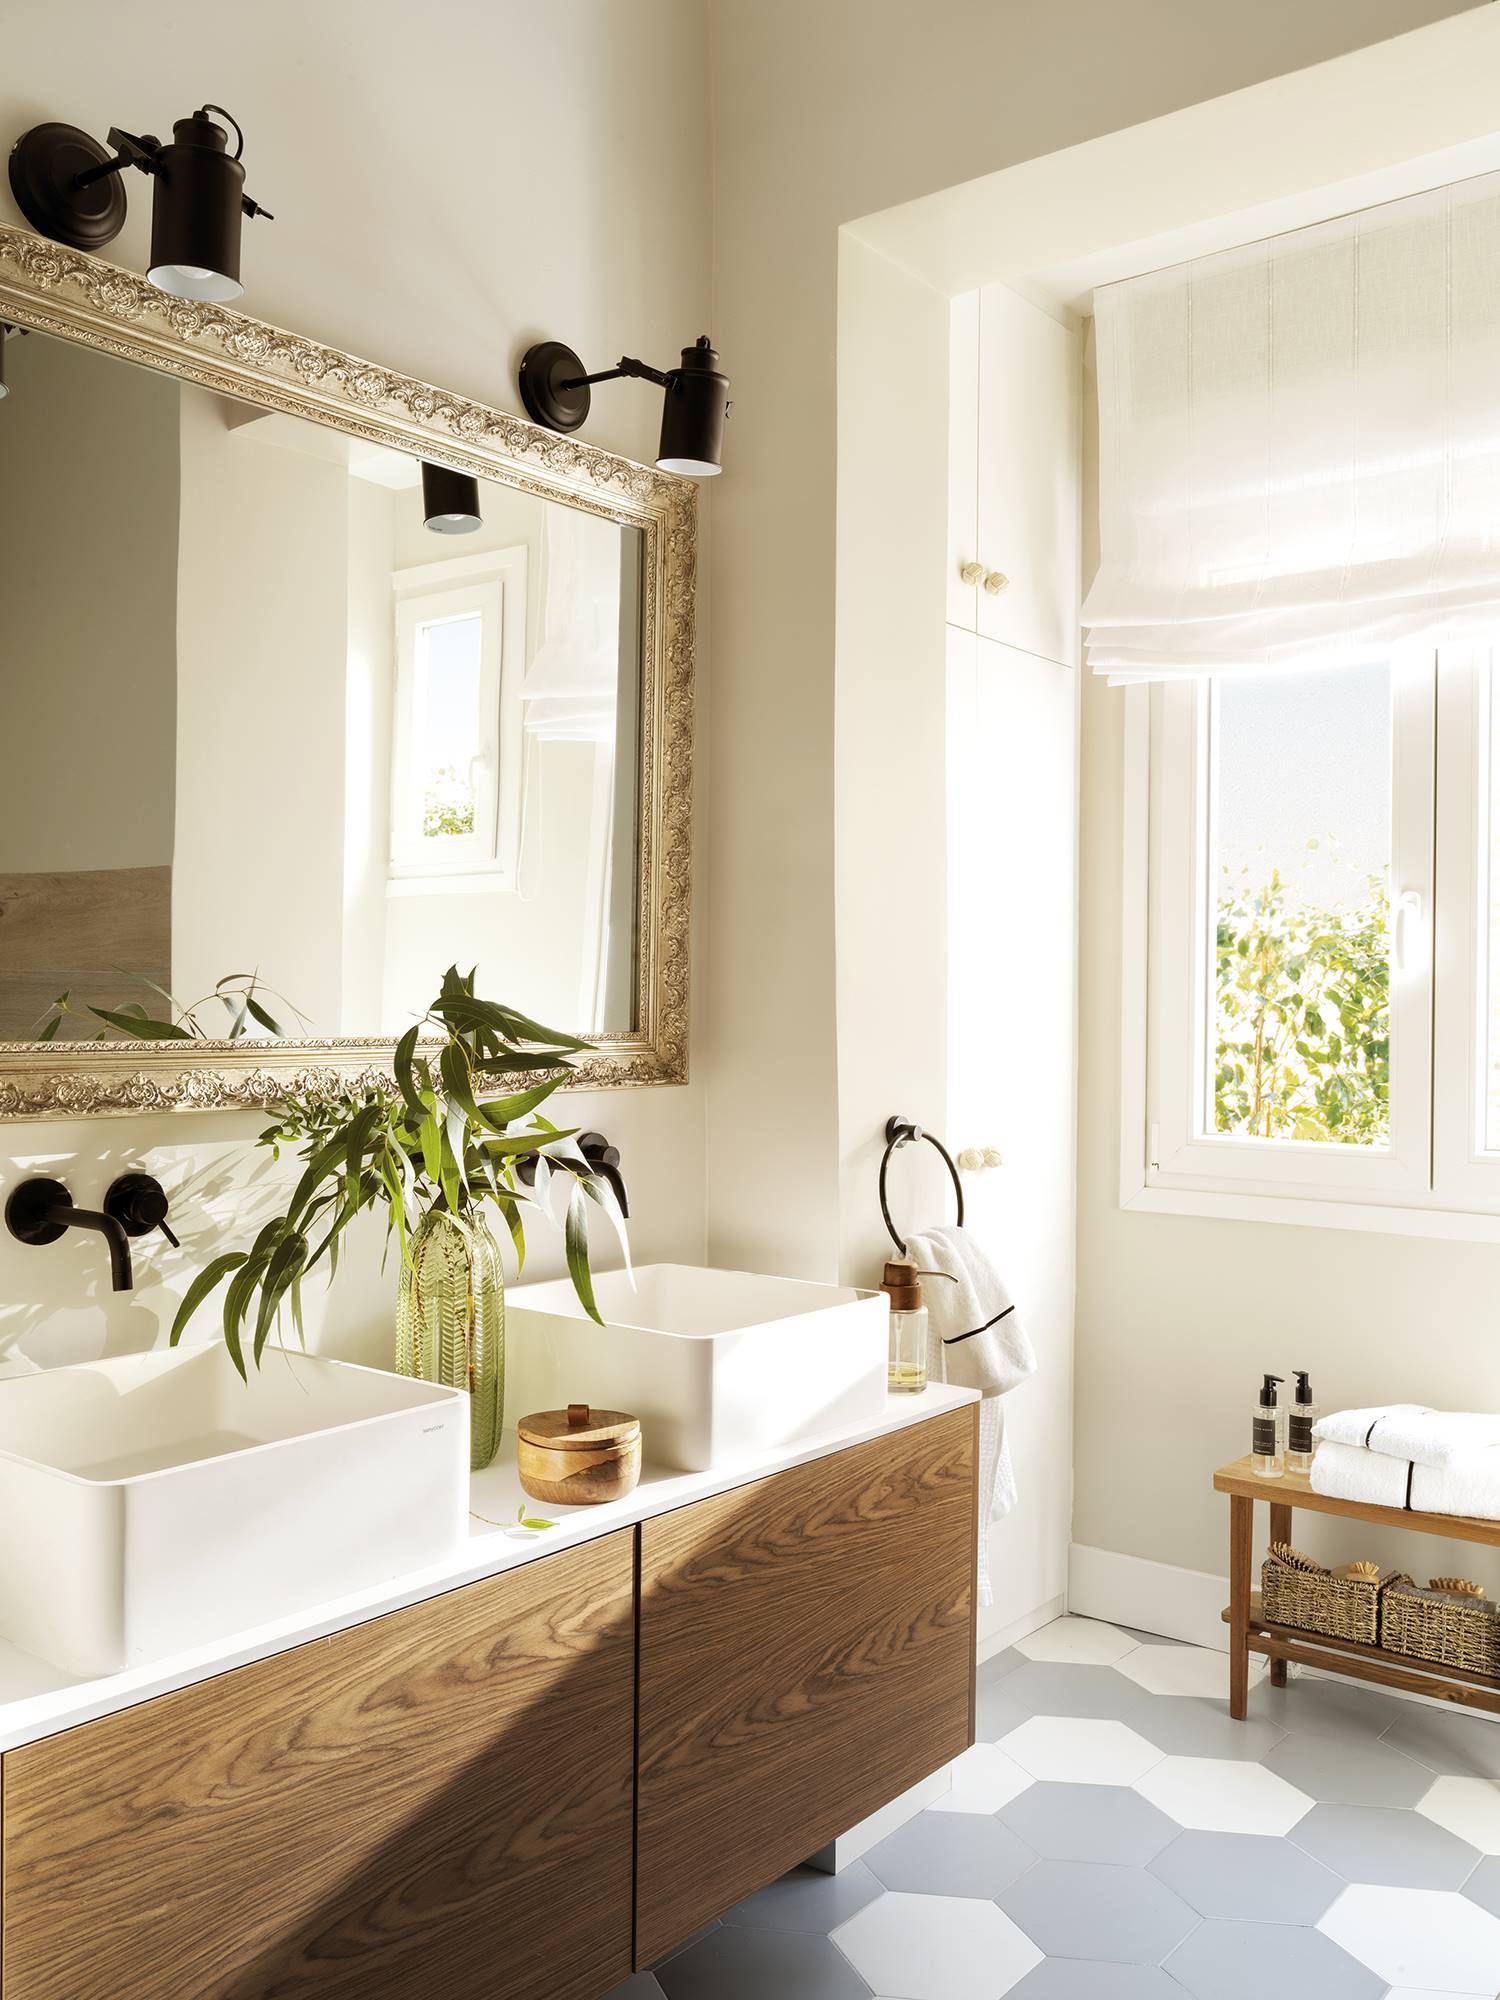 Baño con suelo de baldosas hexagonales, mueble de madera, dos lavabos y un espejo con marco dorado antiguo bajo dos apliques modernos de metal negro.